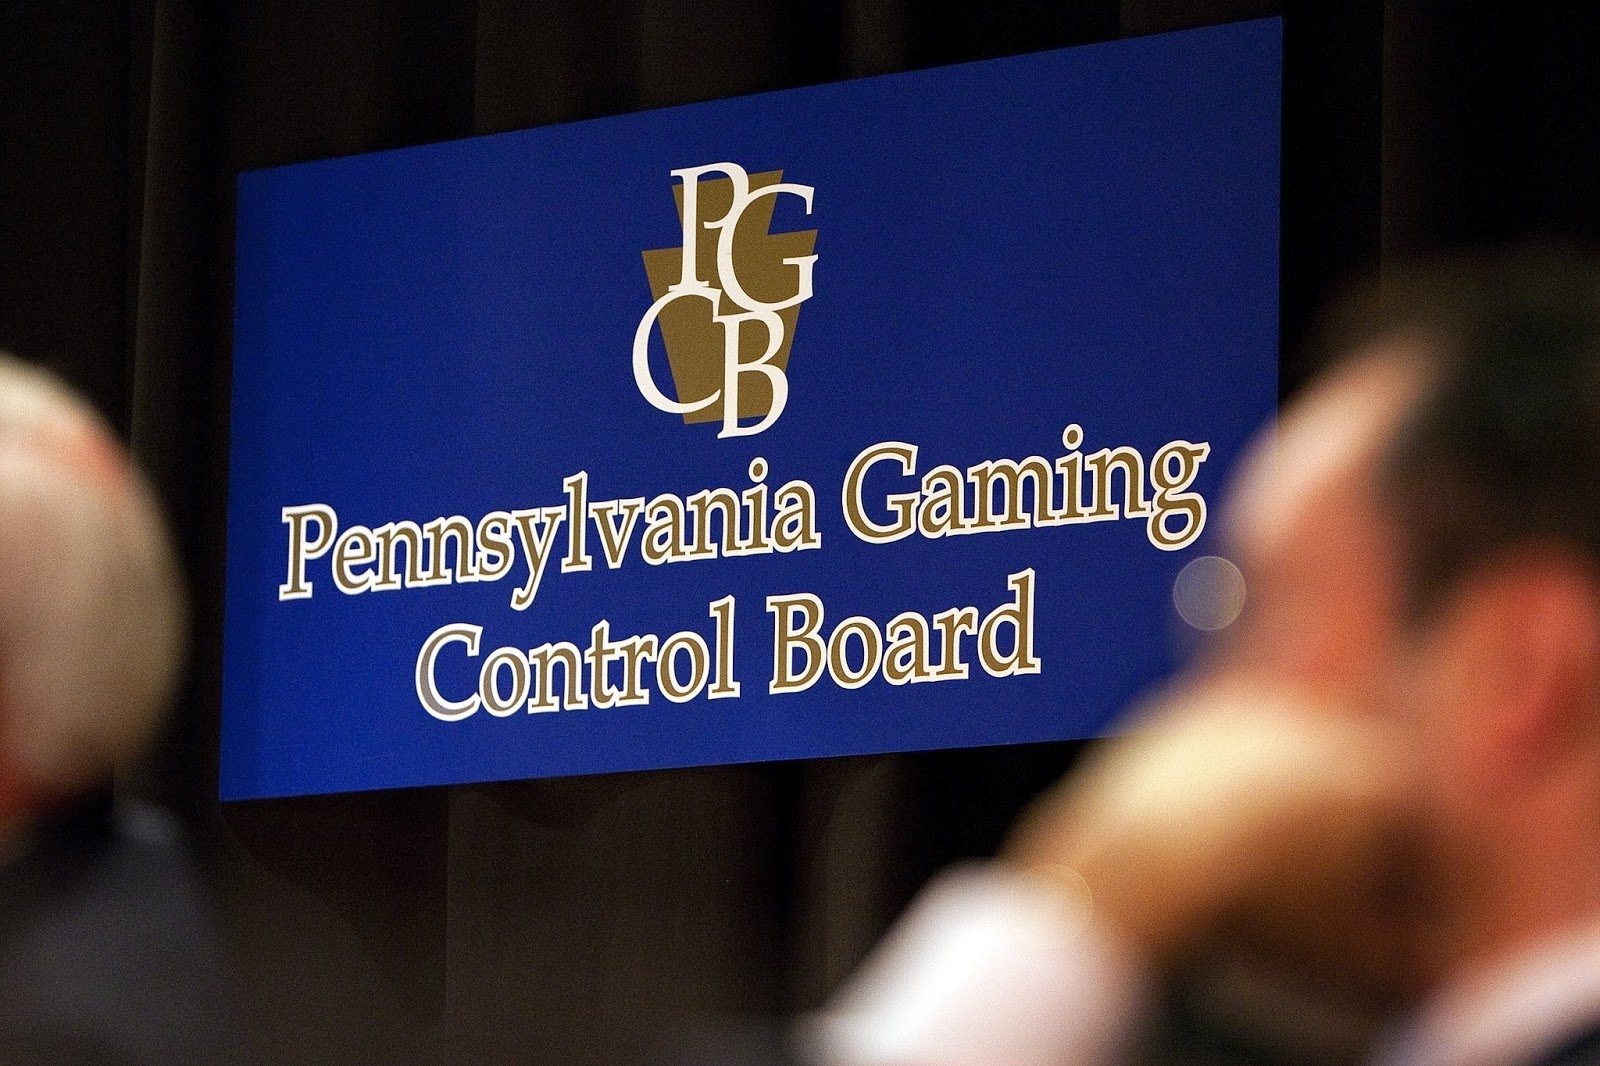 satellite casino Pennsylvania gaming